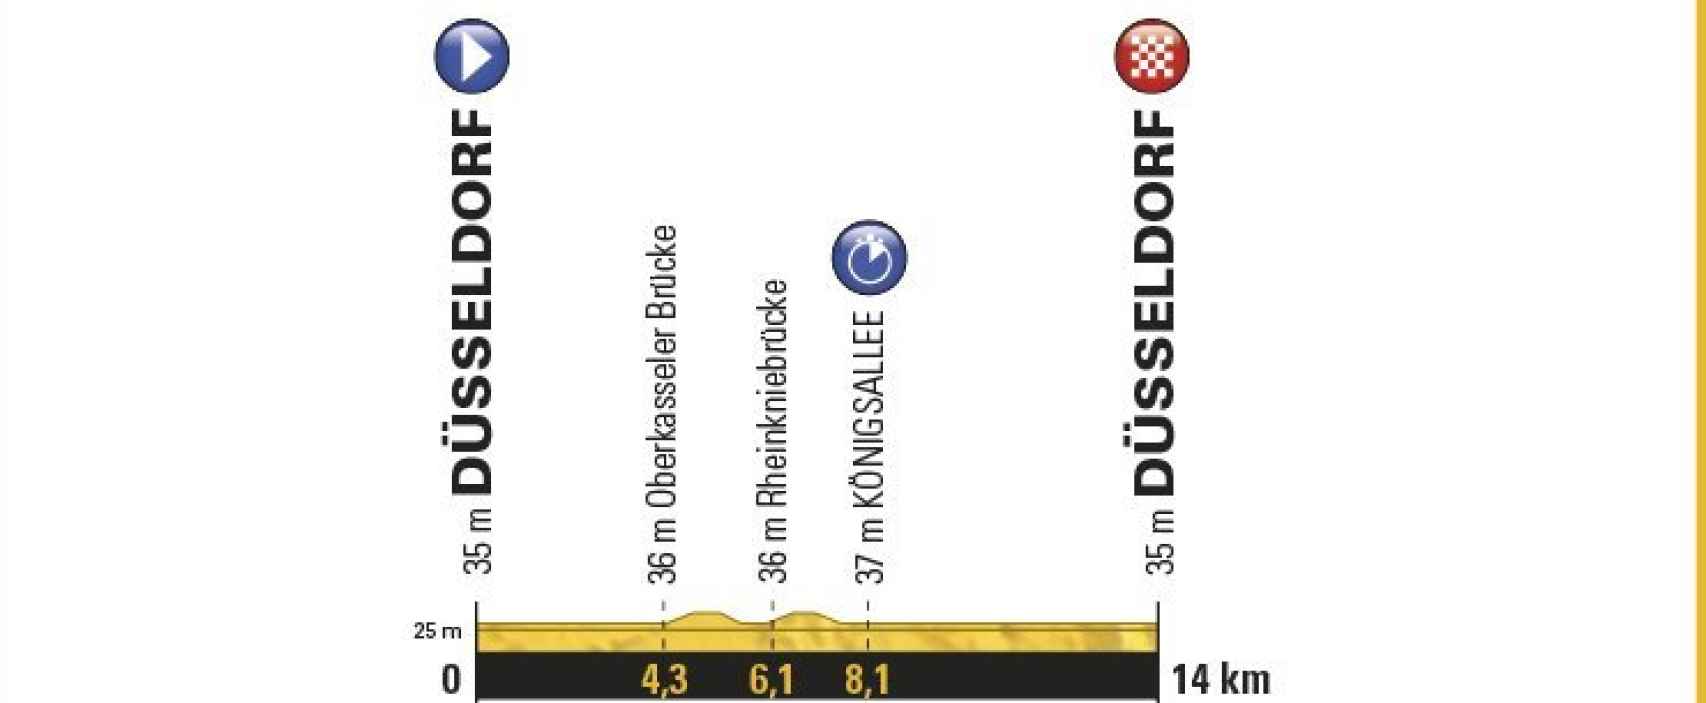 Perfil de la primera etapa del Tour de Francia 2017.